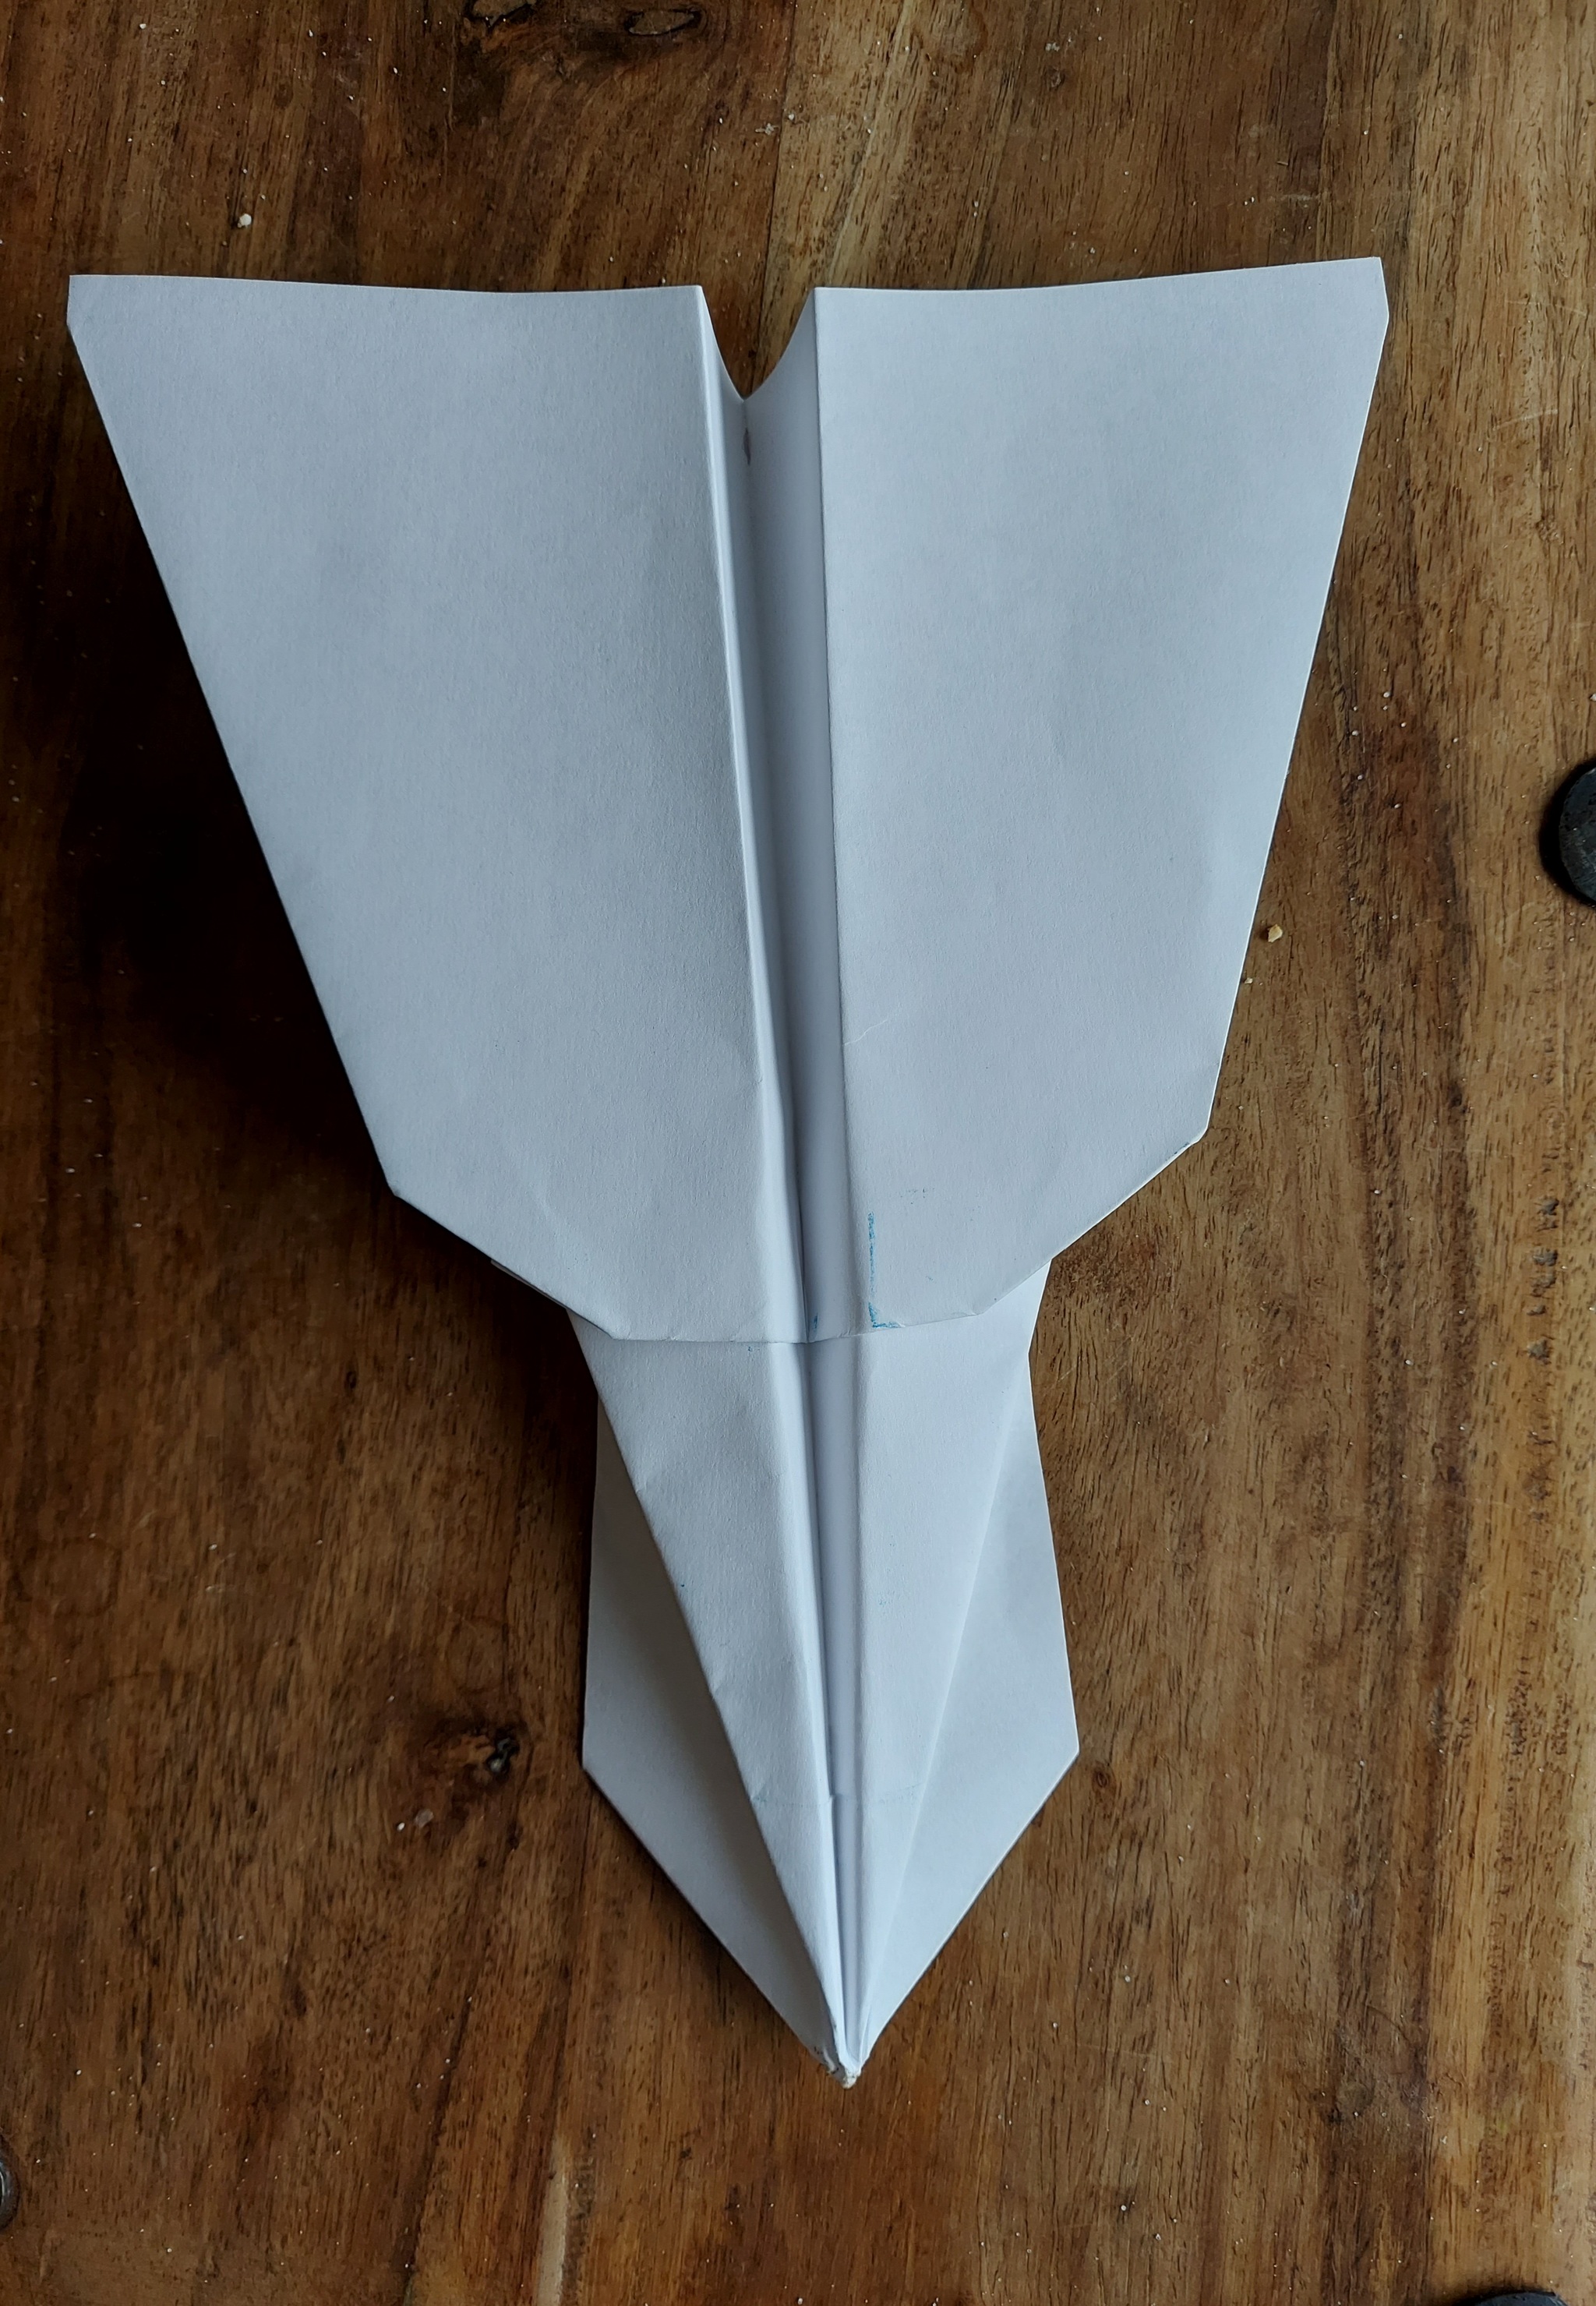 Как сделать самолётик из бумаги а4 который далеко летает